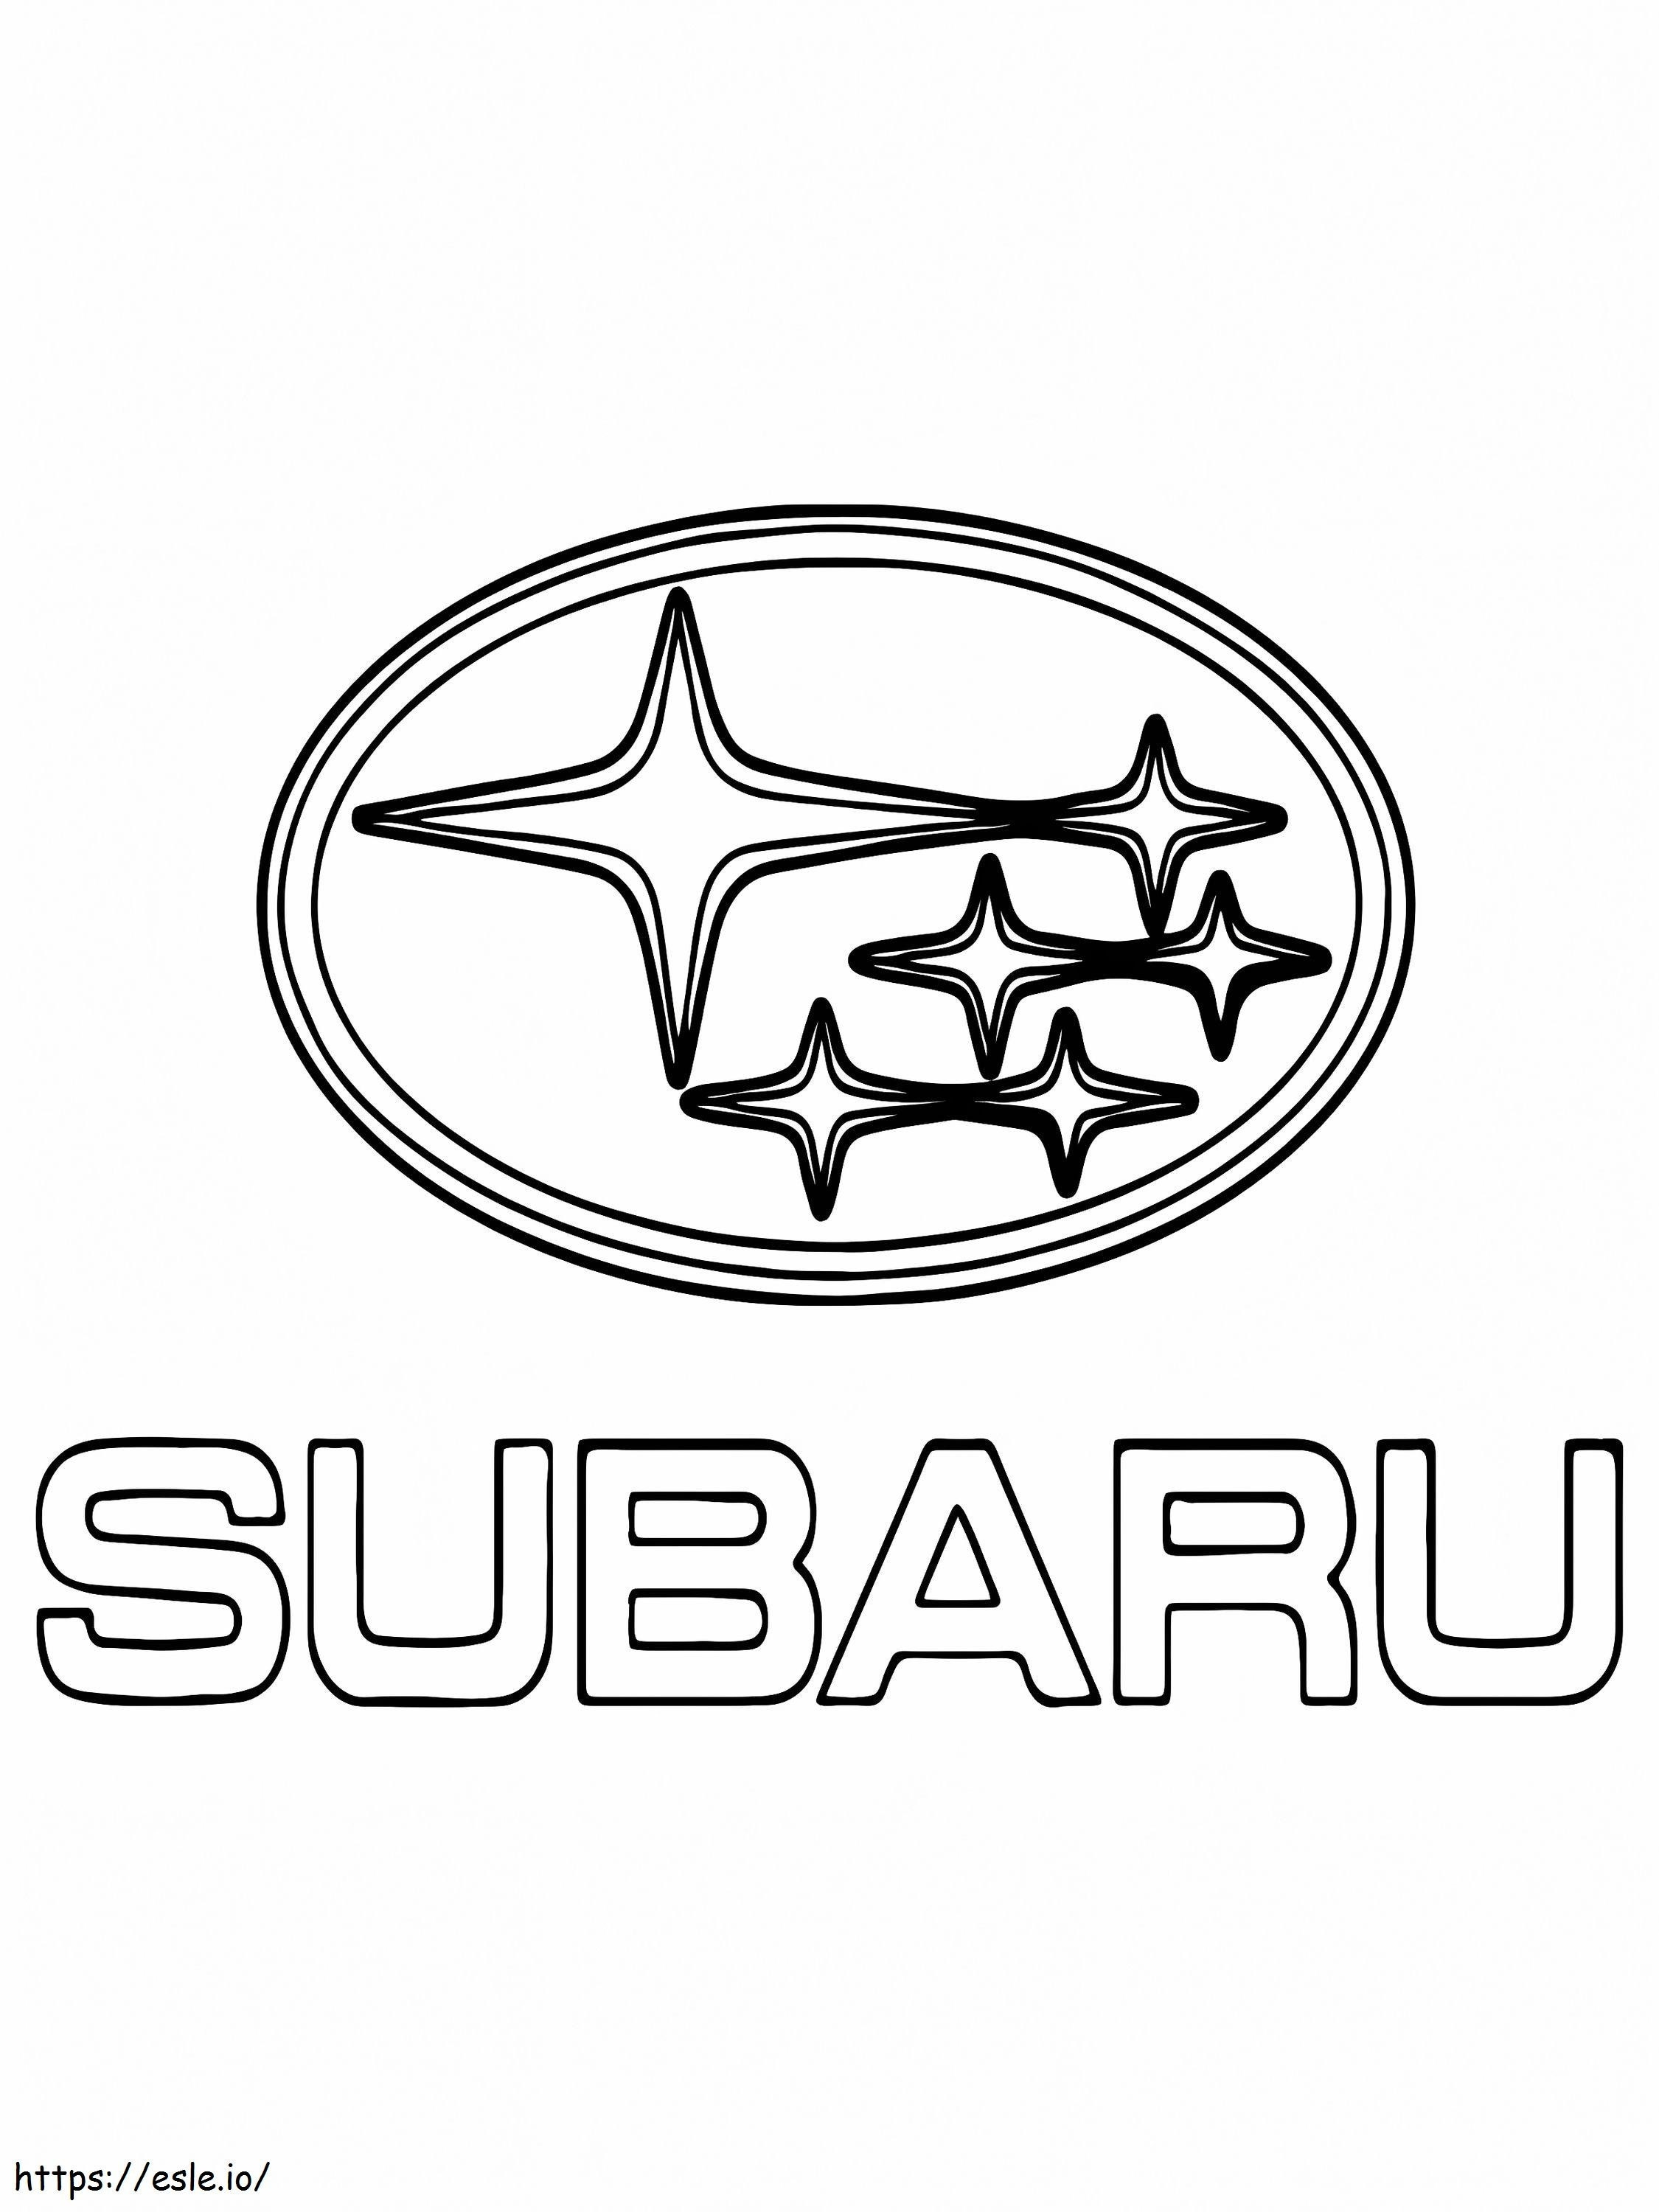 Subaru Car Logo coloring page